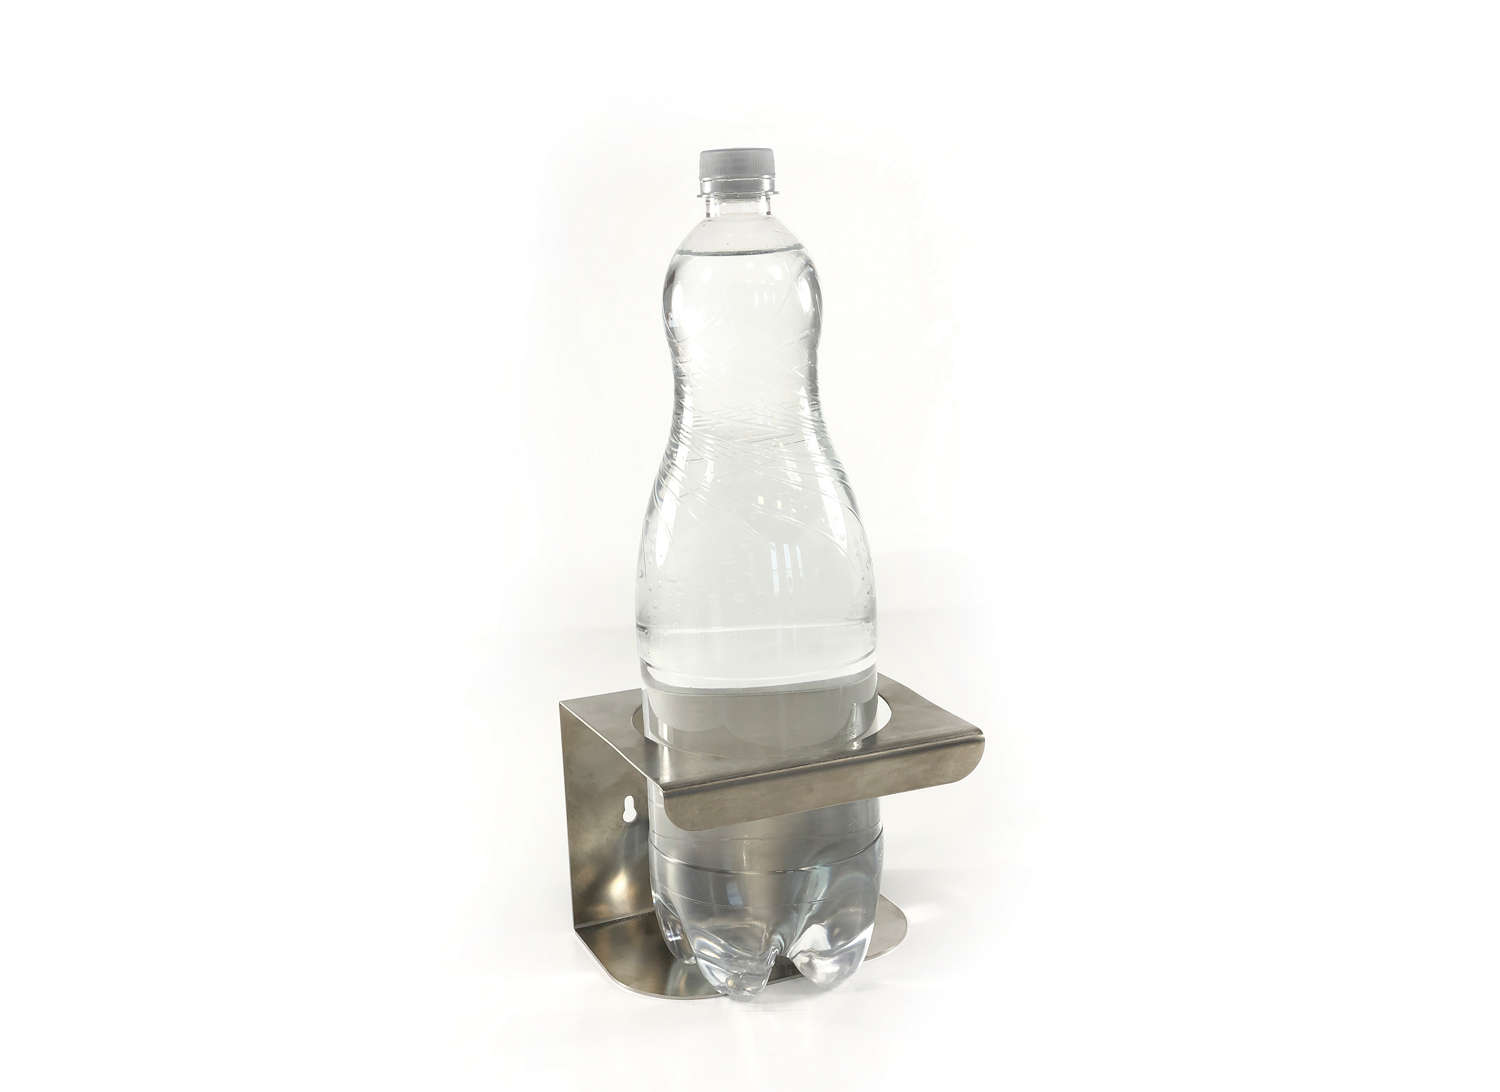 Stainless steel bottle holder